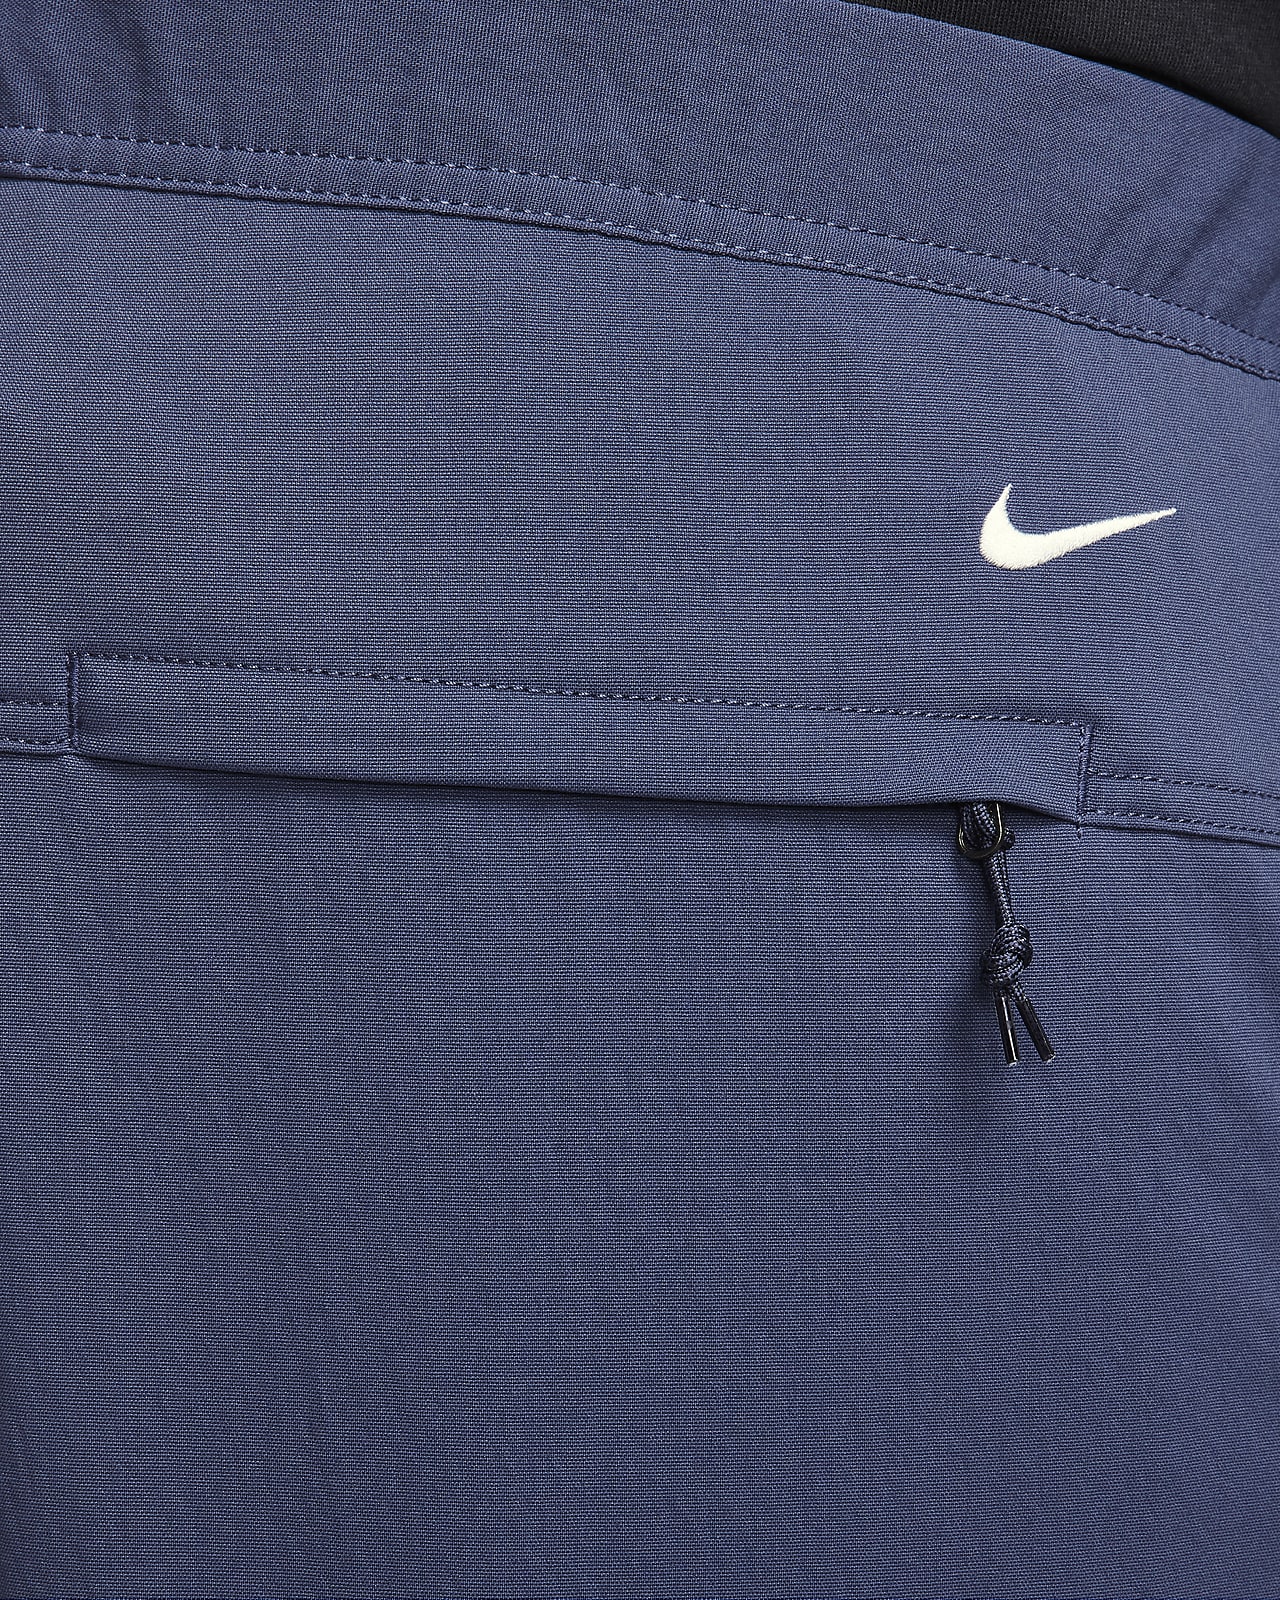 Nike ACG Woven Cargo Pant (US Sizing) Black